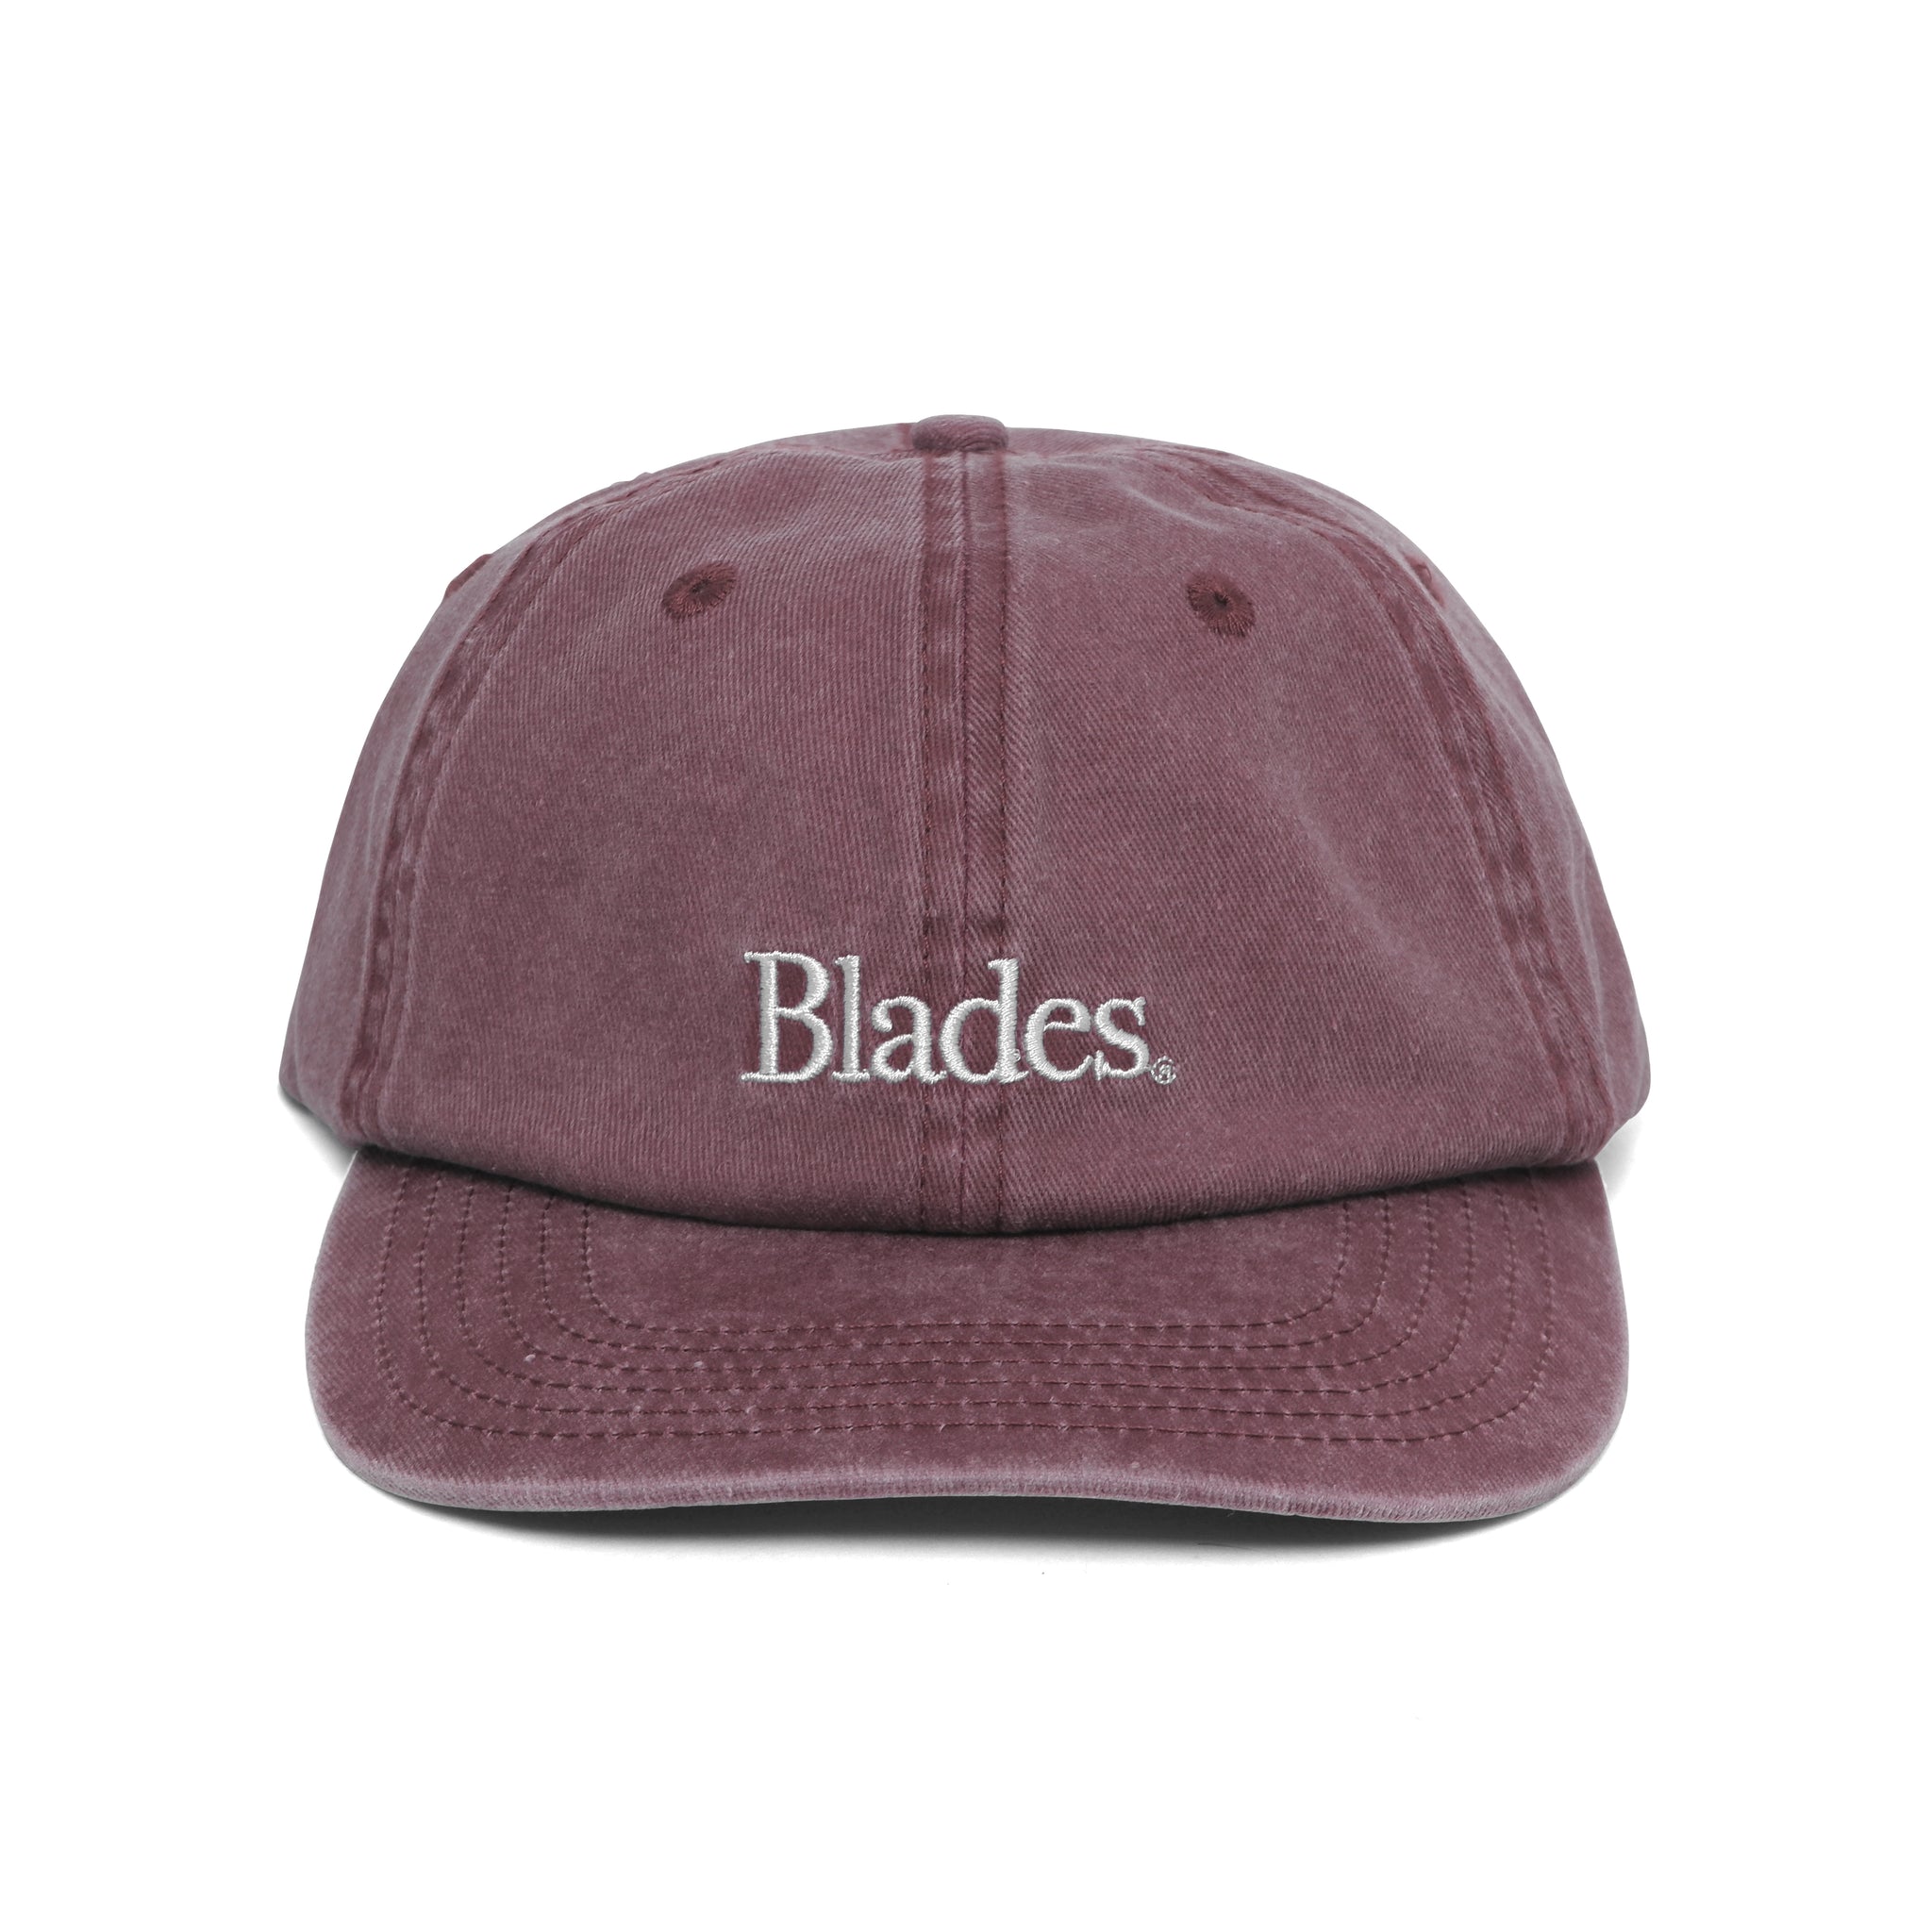 Blades Dad Hat - Maroon